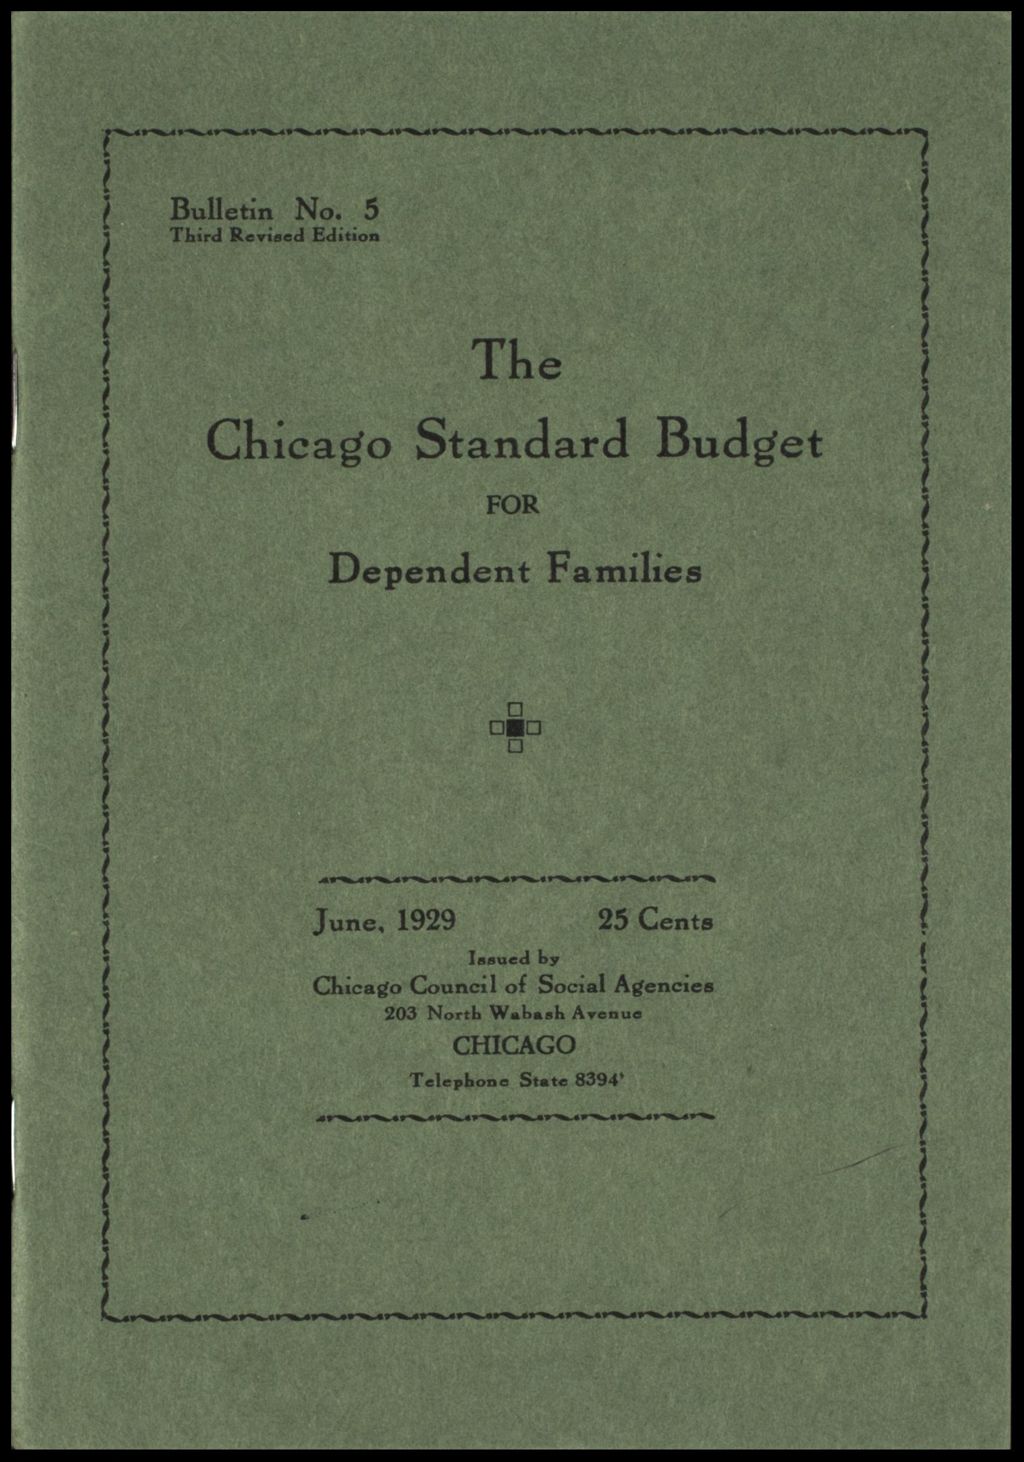 Depression era - relief and unemployment, 1929 (Folder 207)